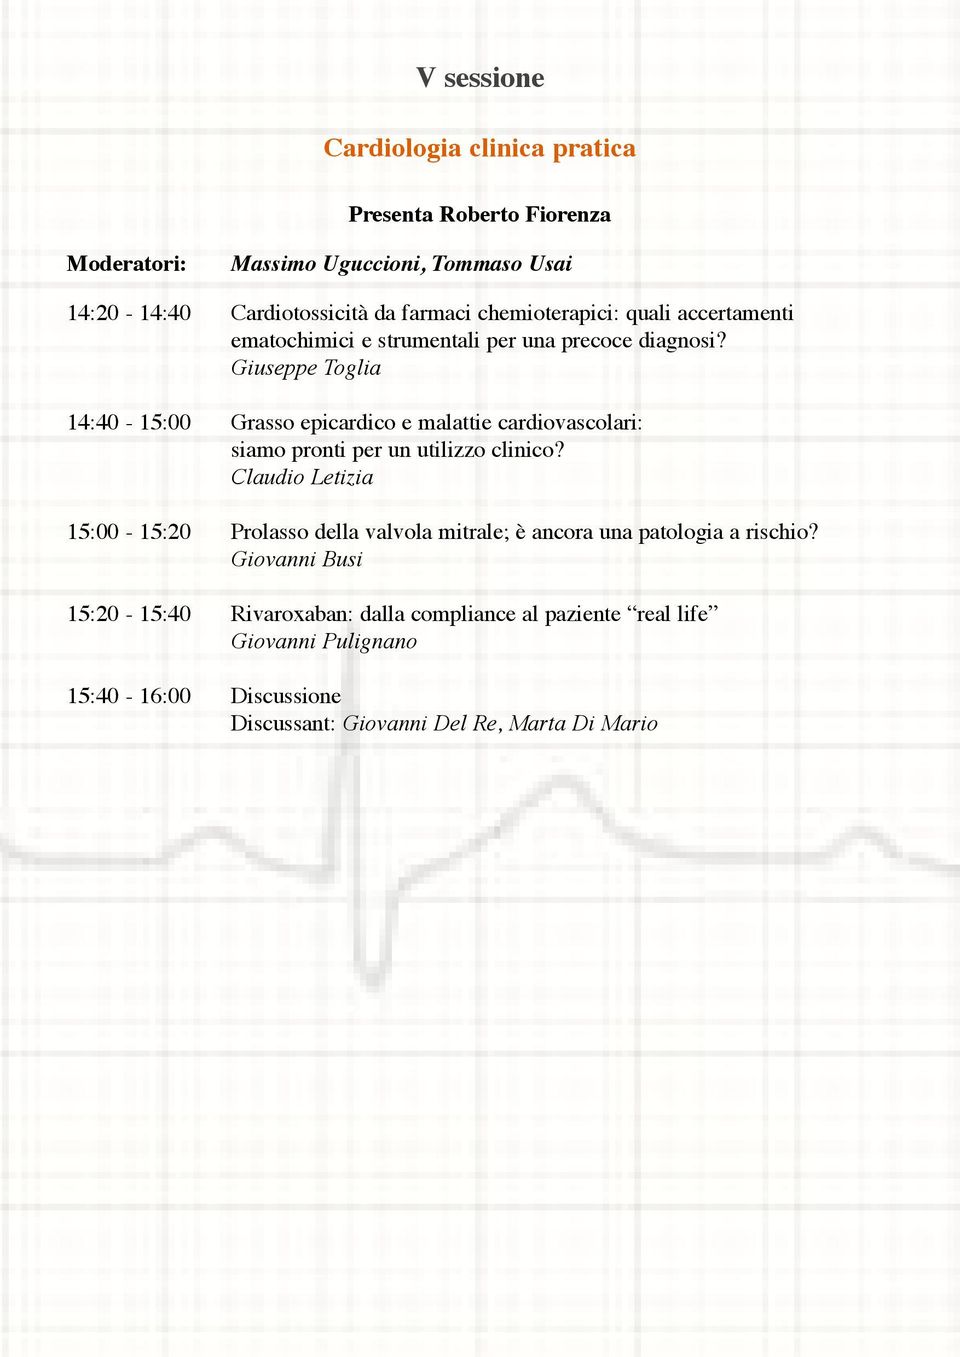 Giuseppe Toglia 14:40-15:00 Grasso epicardico e malattie cardiovascolari: siamo pronti per un utilizzo clinico?